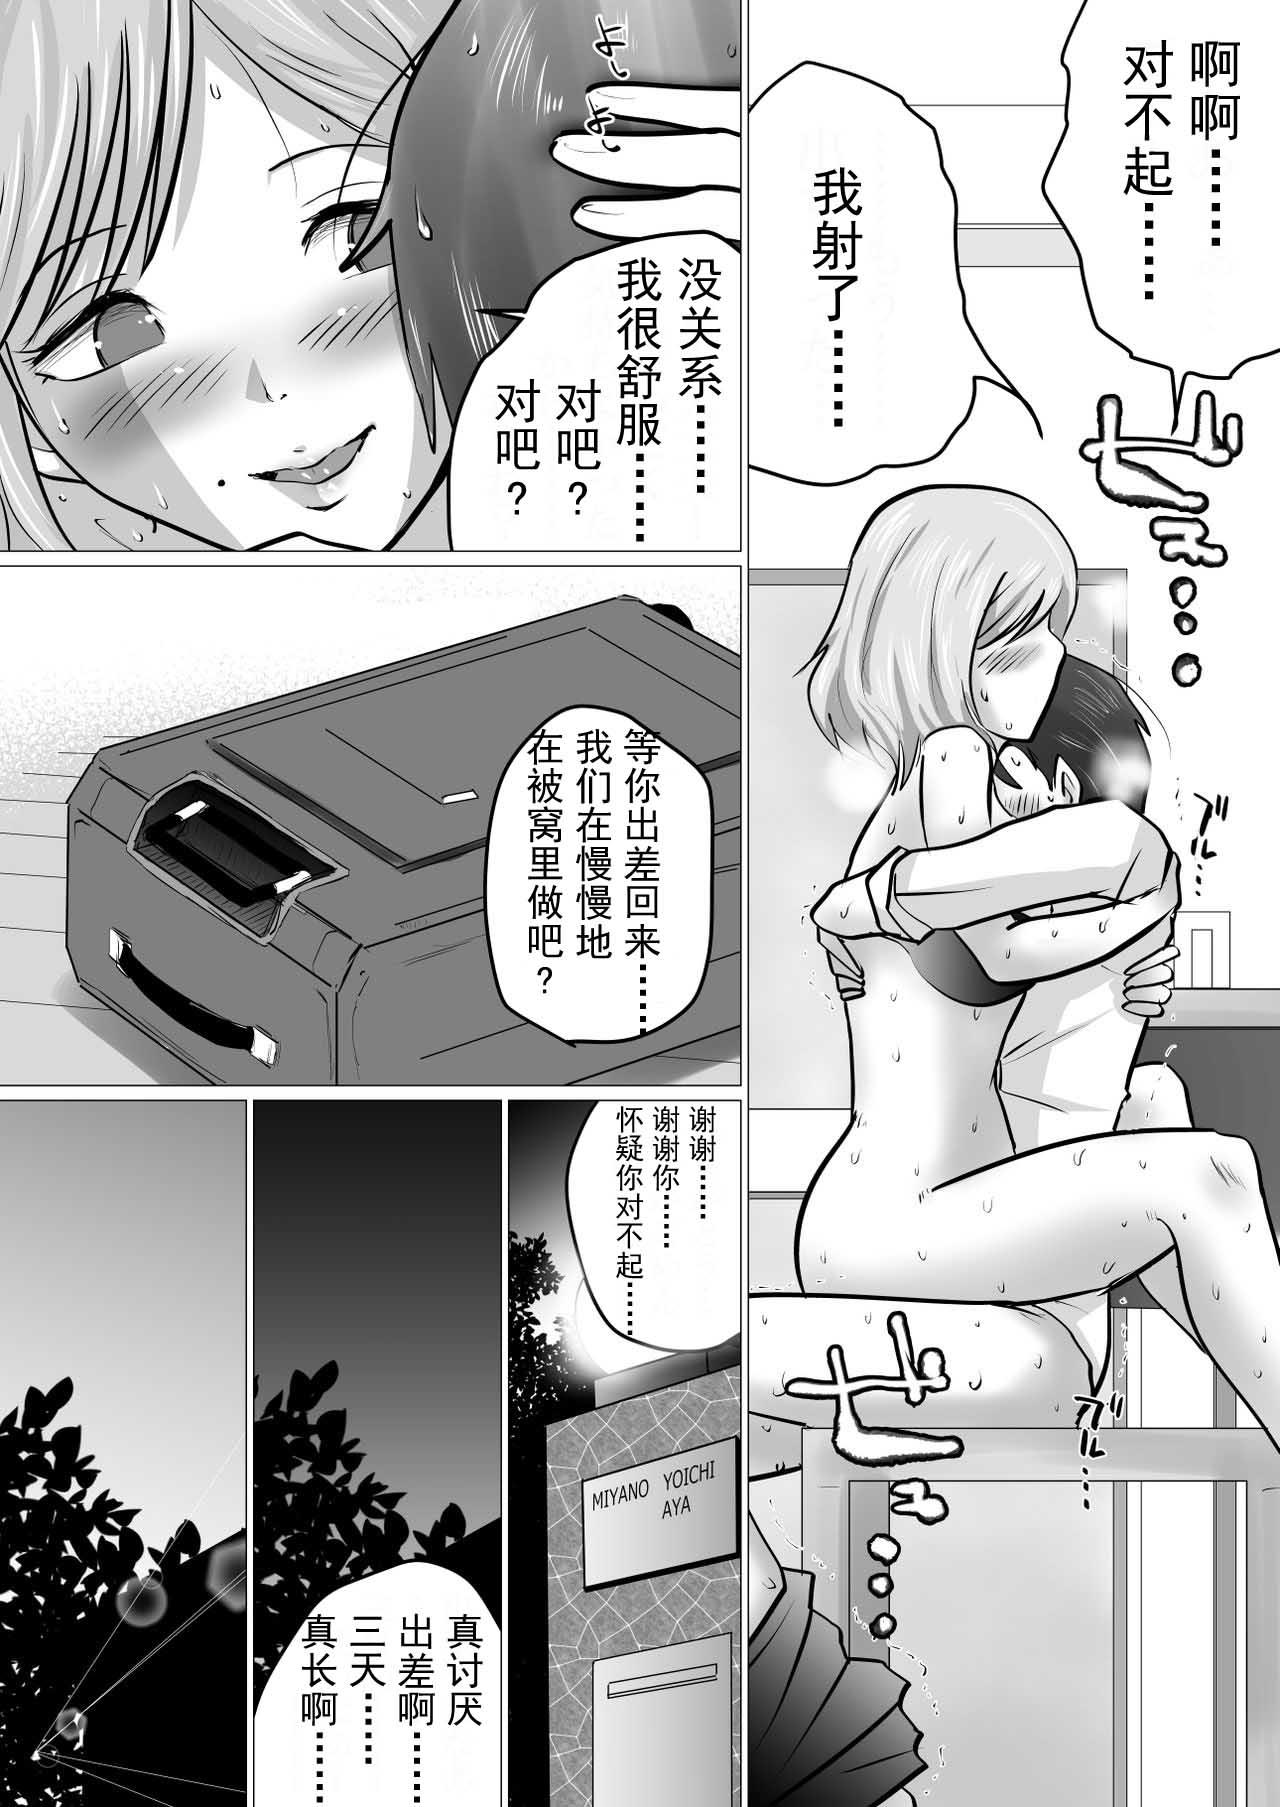 Butthole [Makoto Shiyaka] Rinjin ni Dakare Tsuzukeru to iu koto[Chinese]【不可视汉化】 - Original Brazilian - Page 9